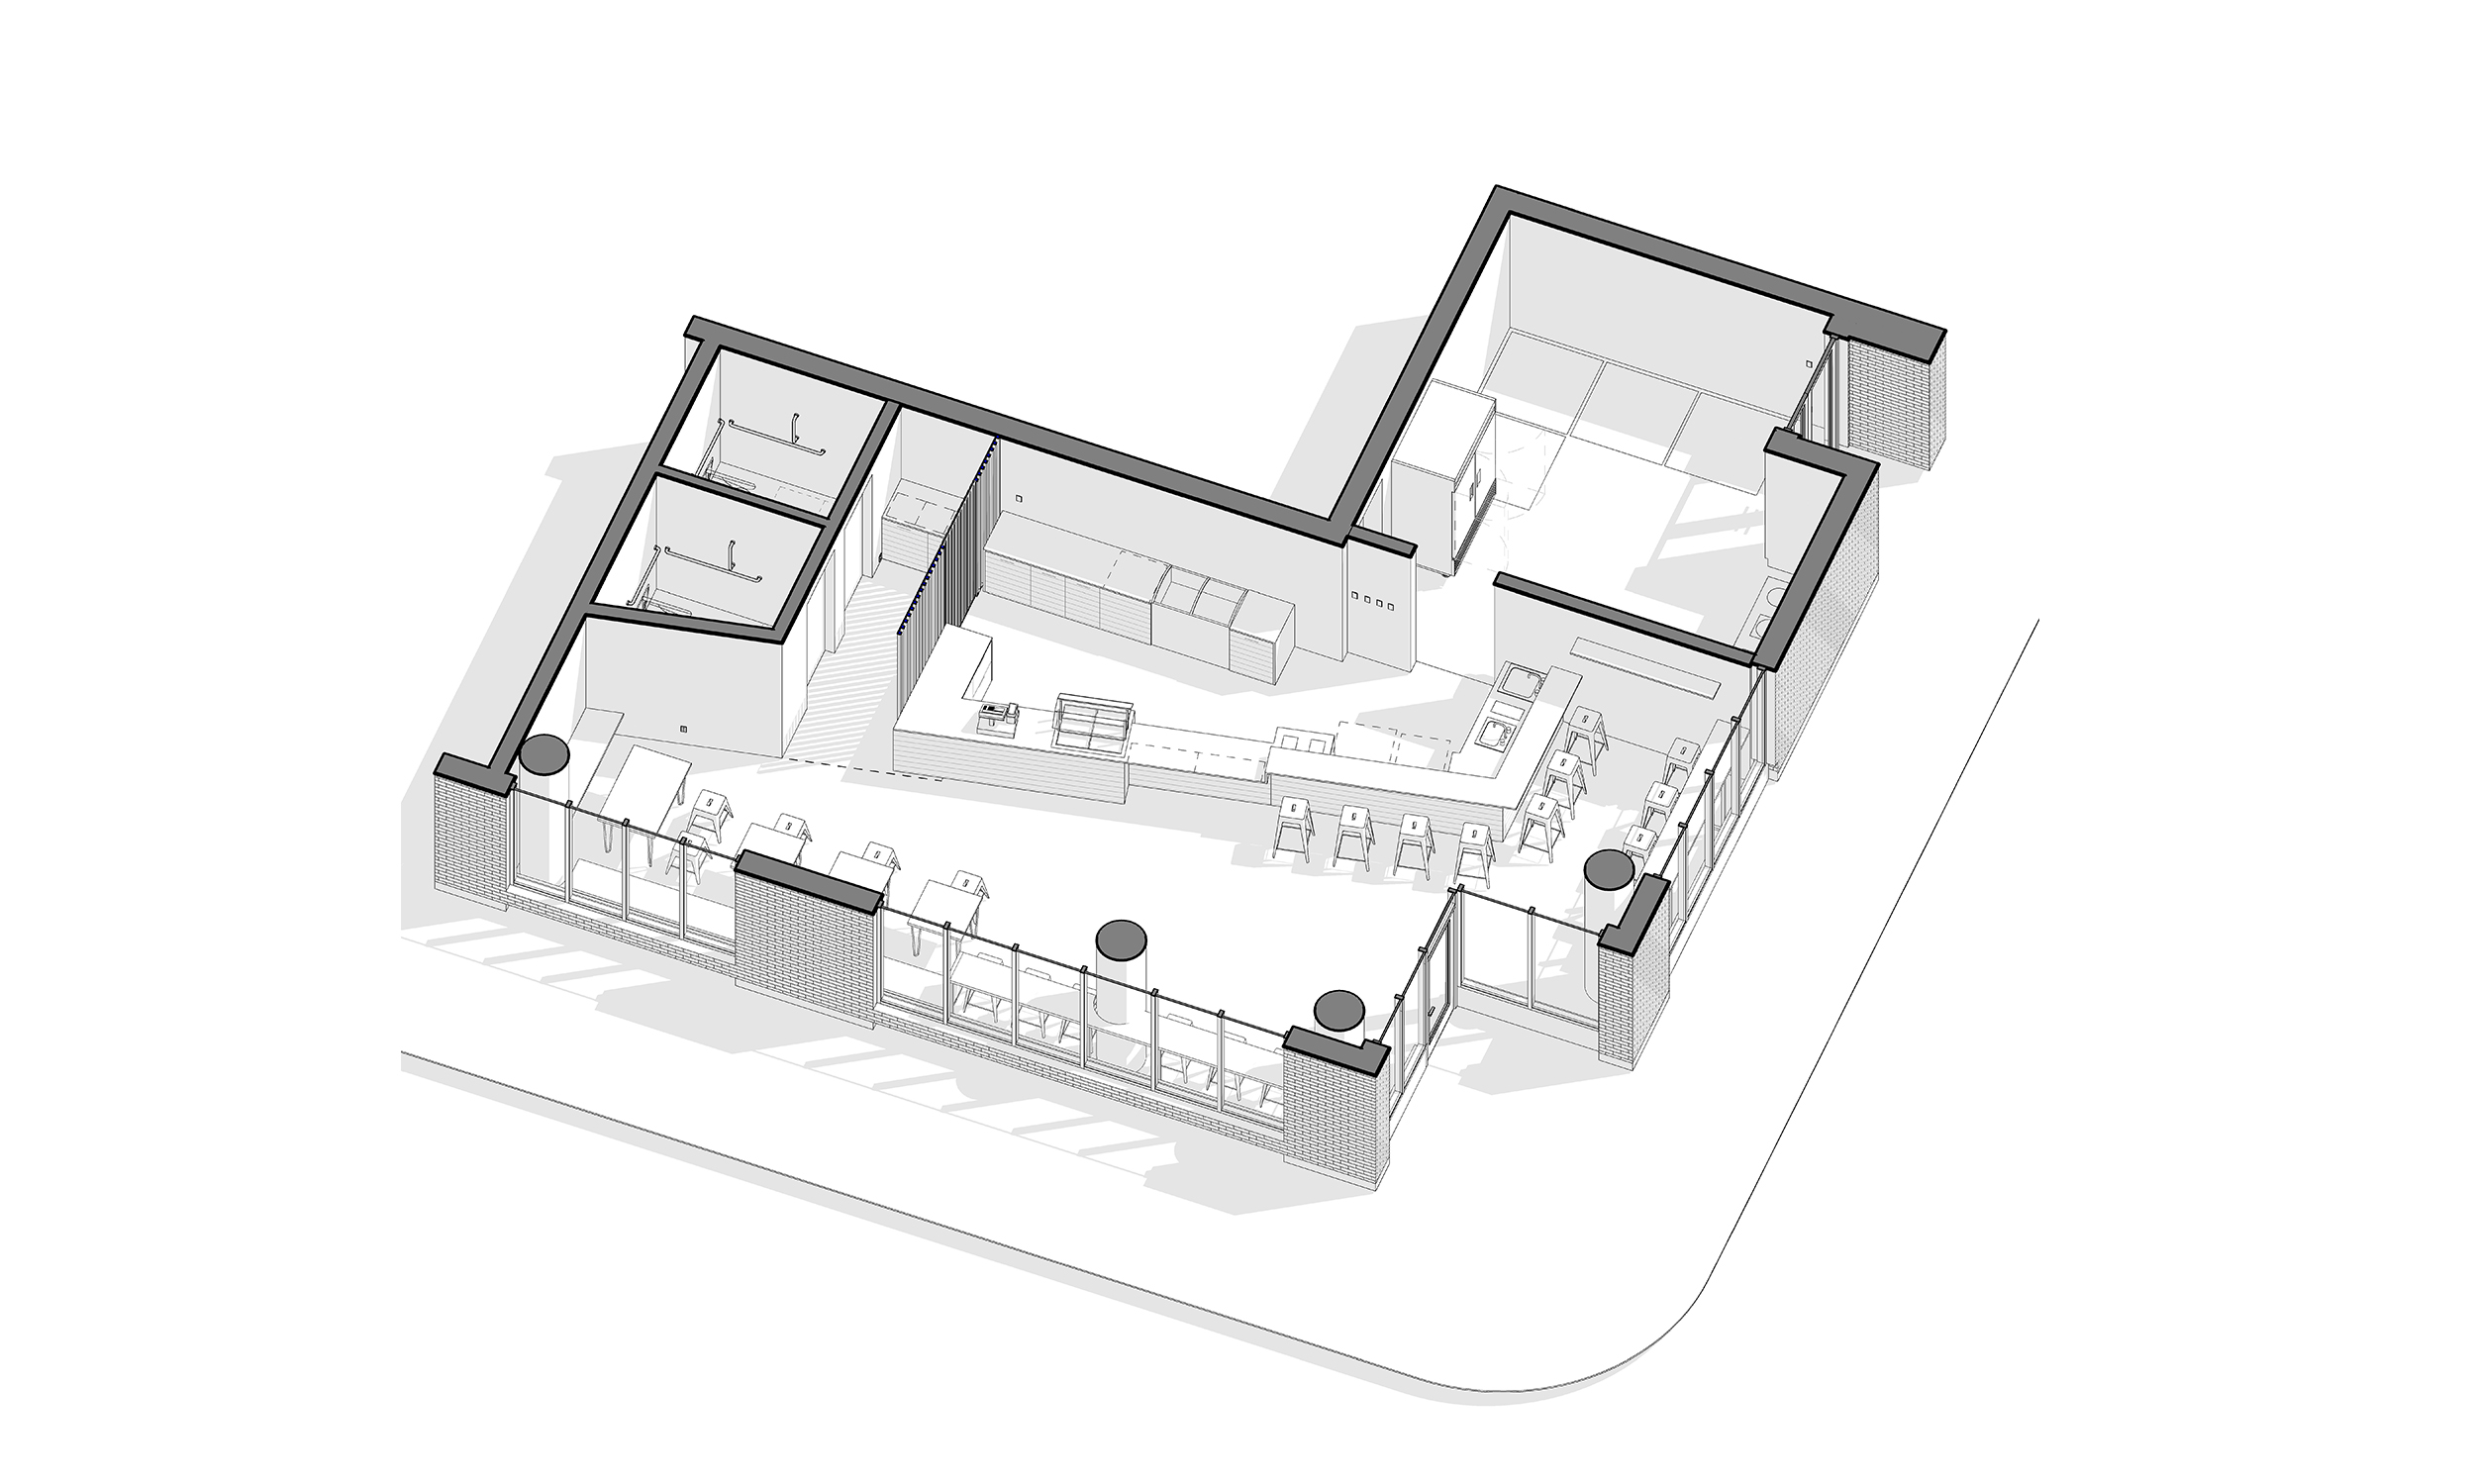 MILK+T Boba Cafe — Propel Studio Architecture Portland